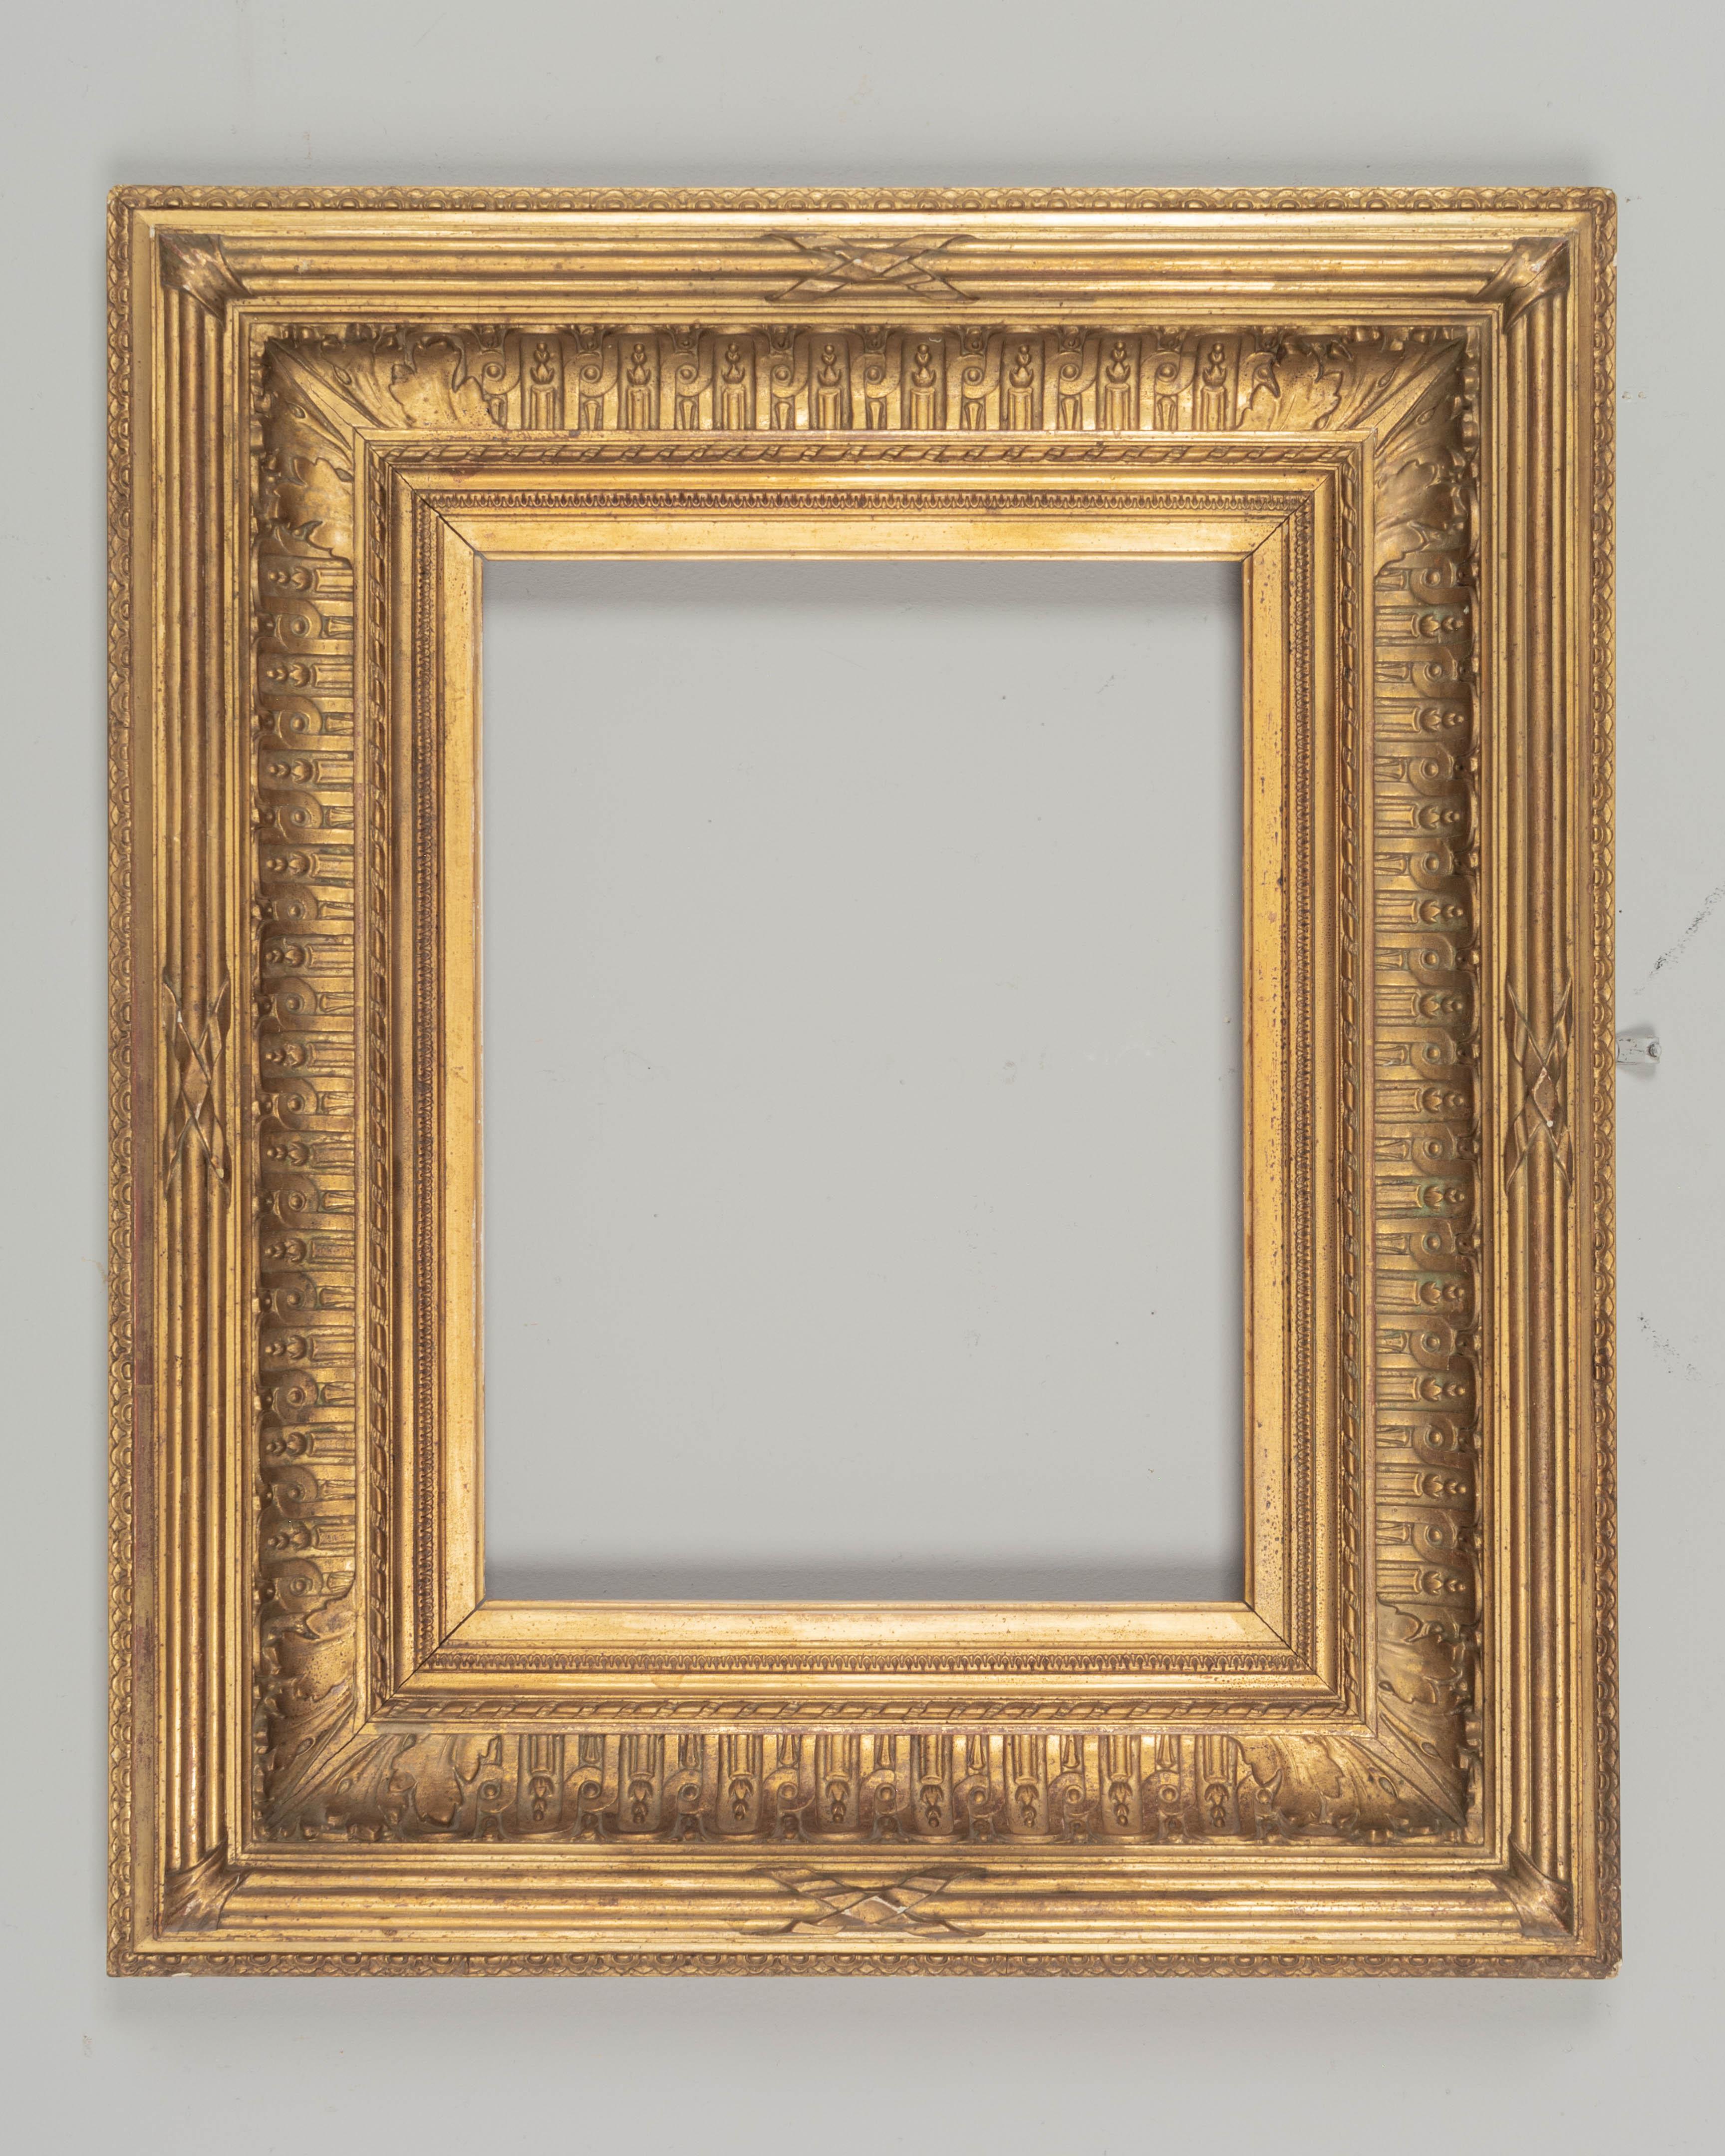 Ein französischer Bilderrahmen aus Goldholz im Directoire-Stil des 19. Hochwertige, schwere Leisten mit warmer Vergoldung. Sehr guter Zustand mit kleinen Schäden.  Schöner Maßstab für die Verwendung als Spiegelrahmen. CIRCA 1820-1840.
Äußere